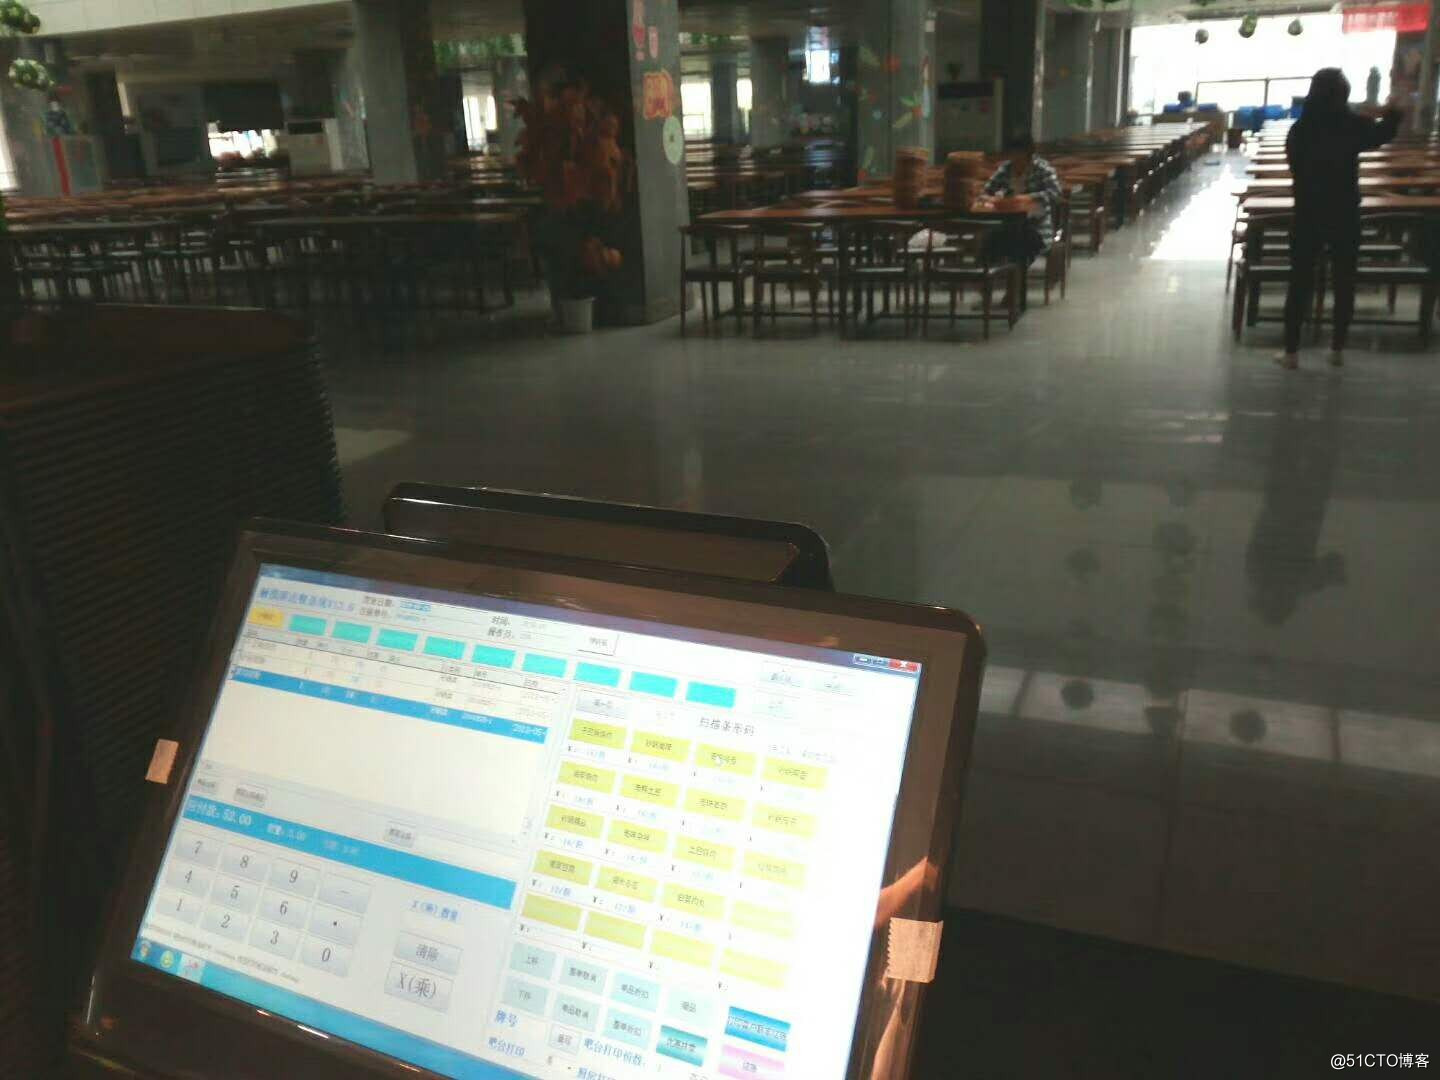 大學食堂餐飲窗口使用的觸摸屏點餐系統